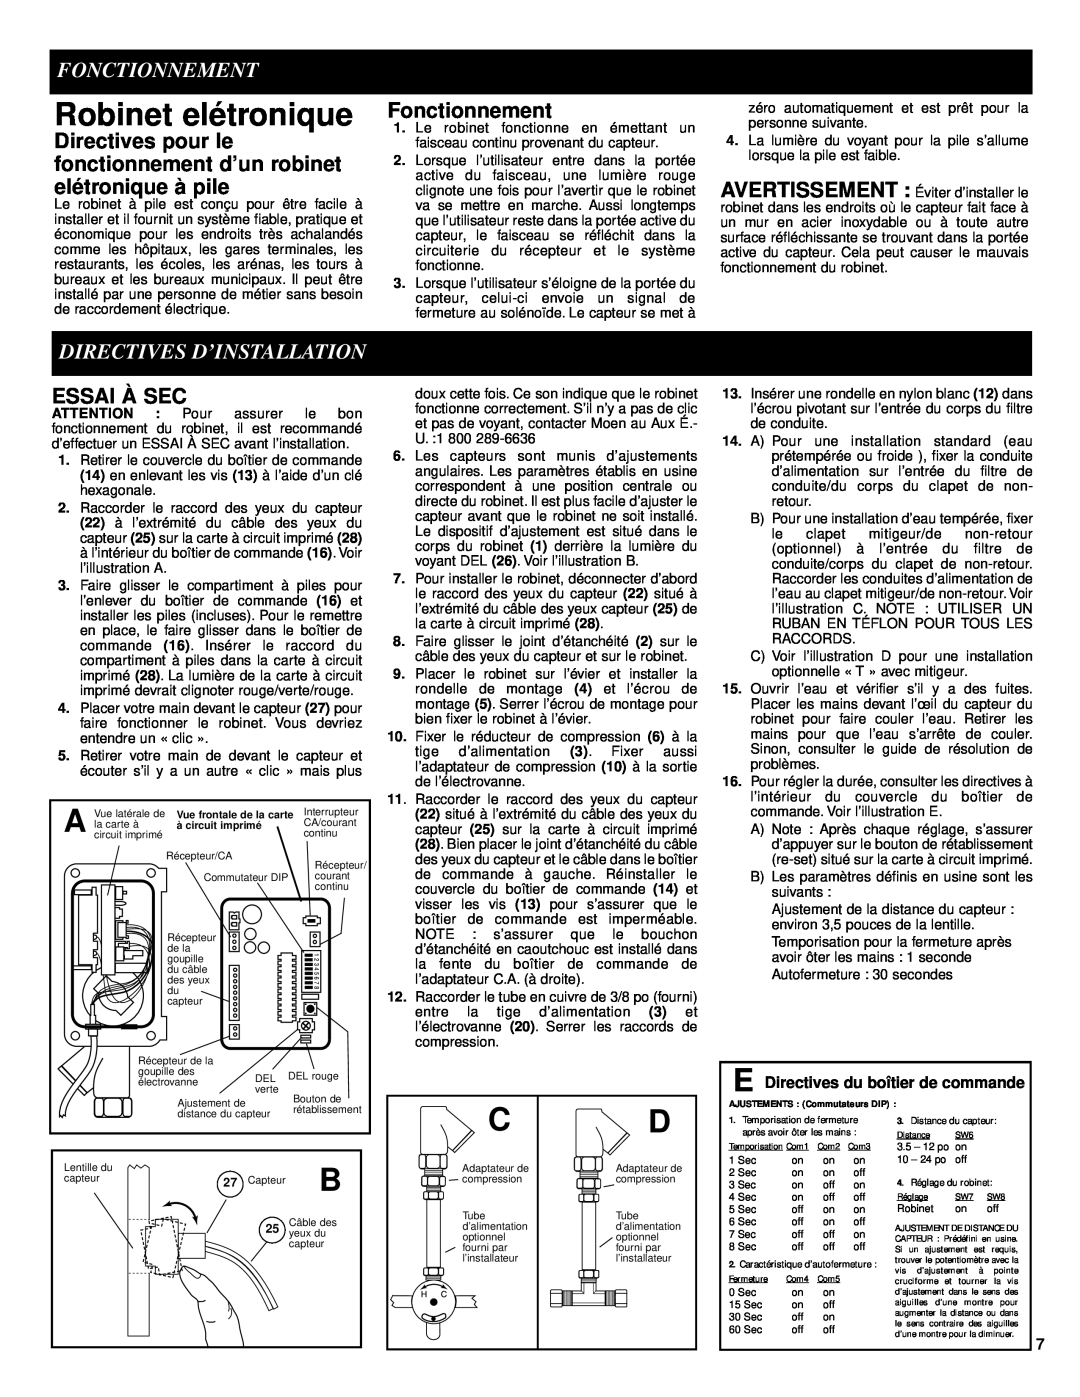 Moen 8302 manual Robinet elétronique, Fonctionnement, Directives D’Installation, Essai À Sec 